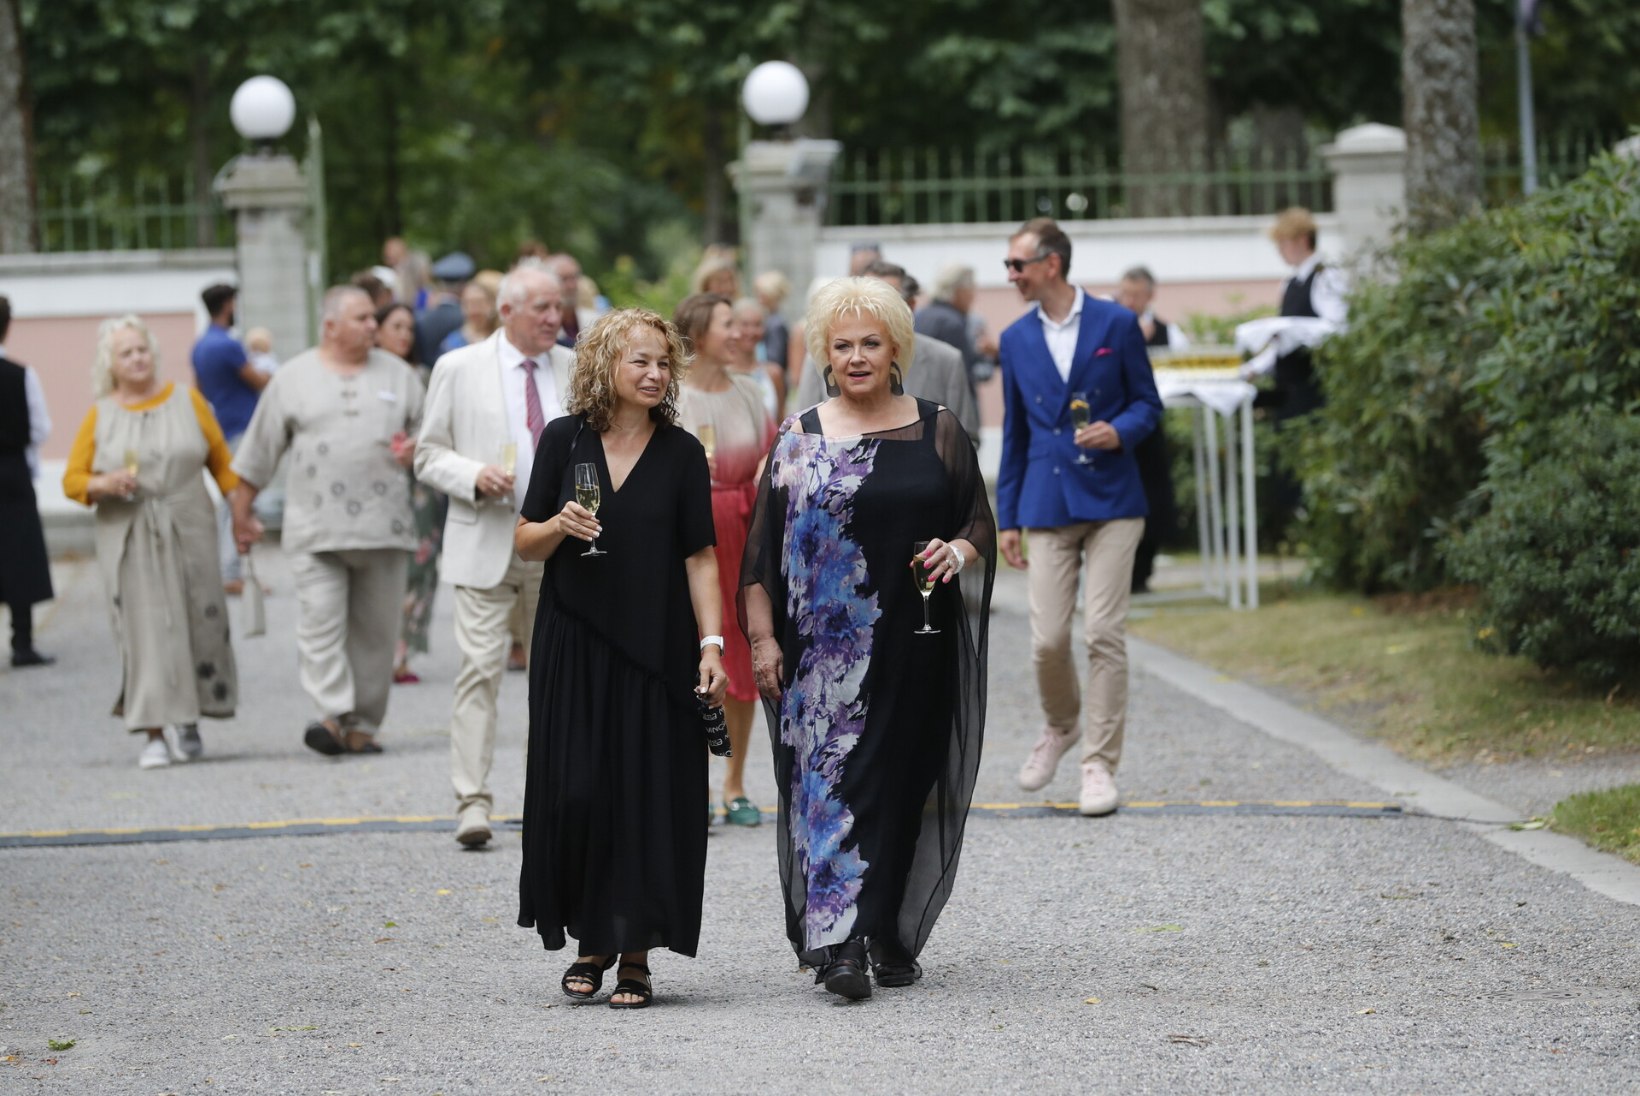 FOTOD | Vaata, kes olid kohal! President võõrustas roosiaias prominentseid külalisi